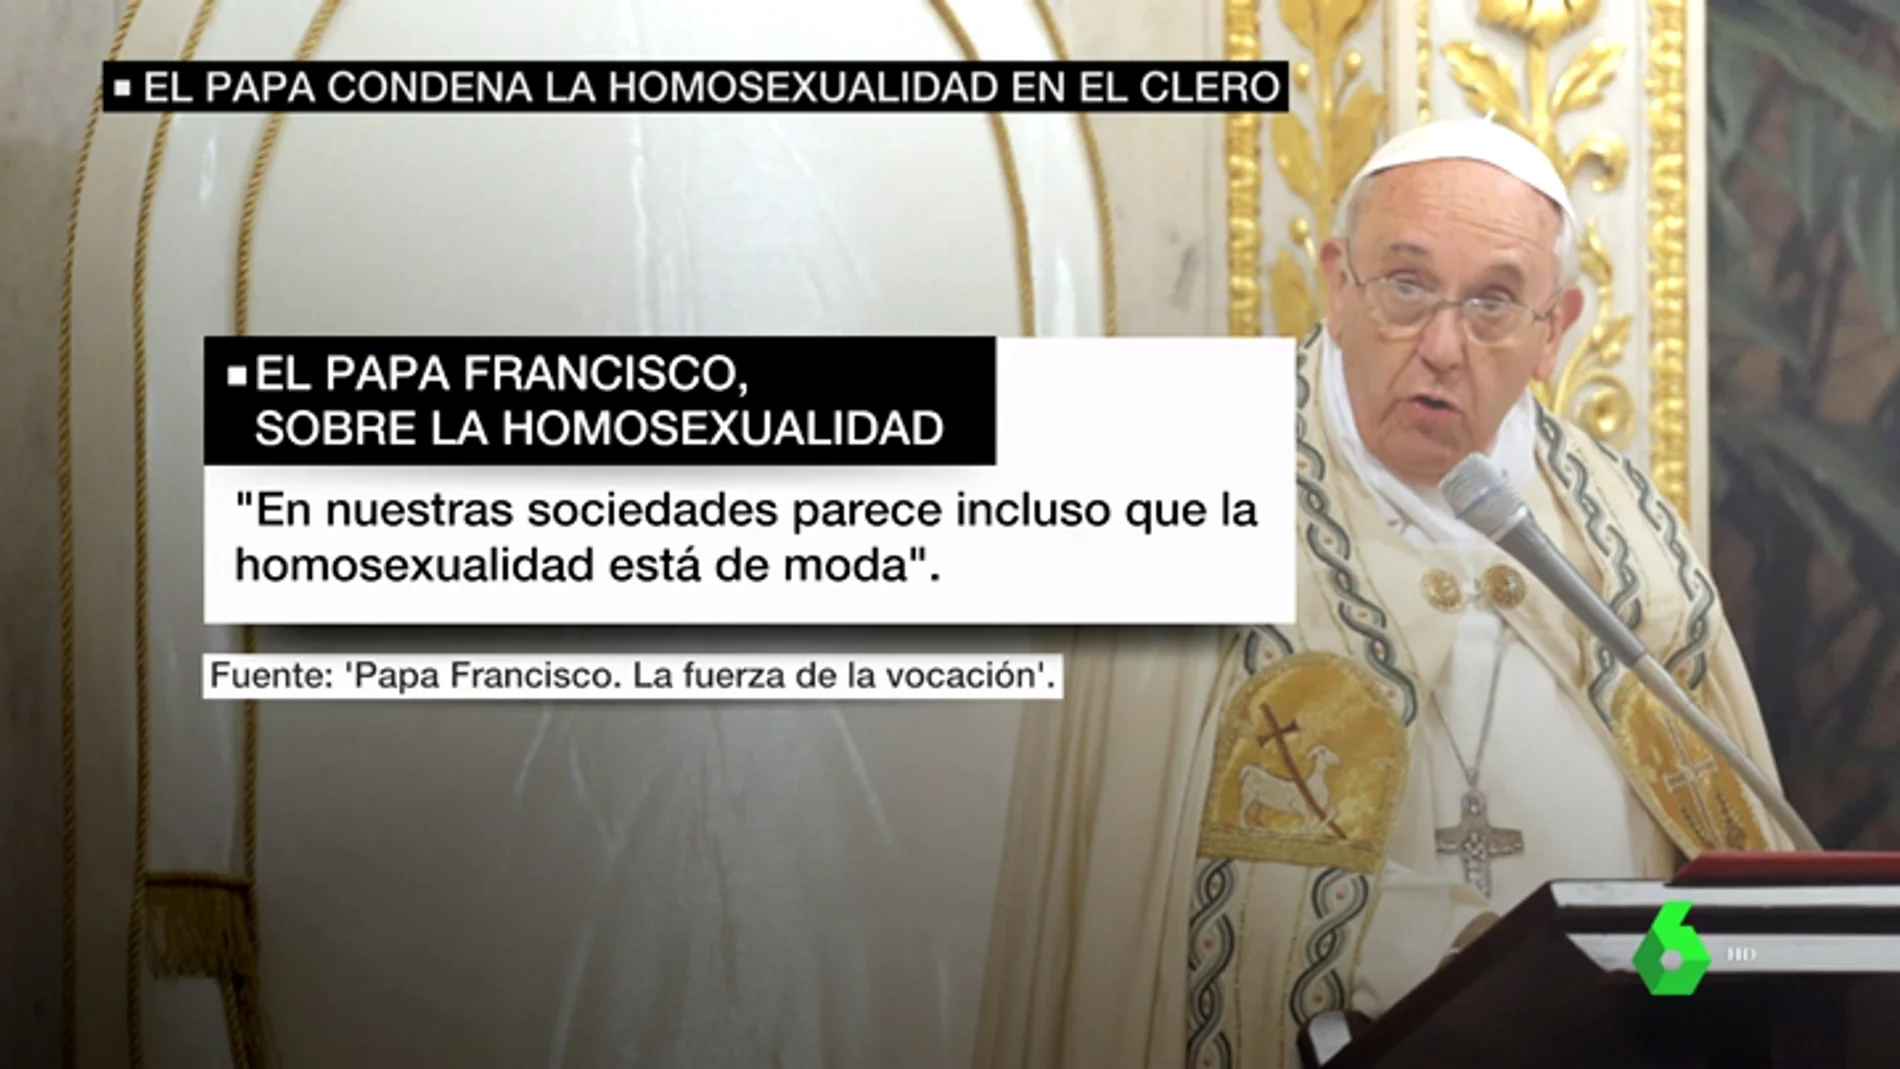 El papa Francisco condena la homosexualidad en el clero y dice que 